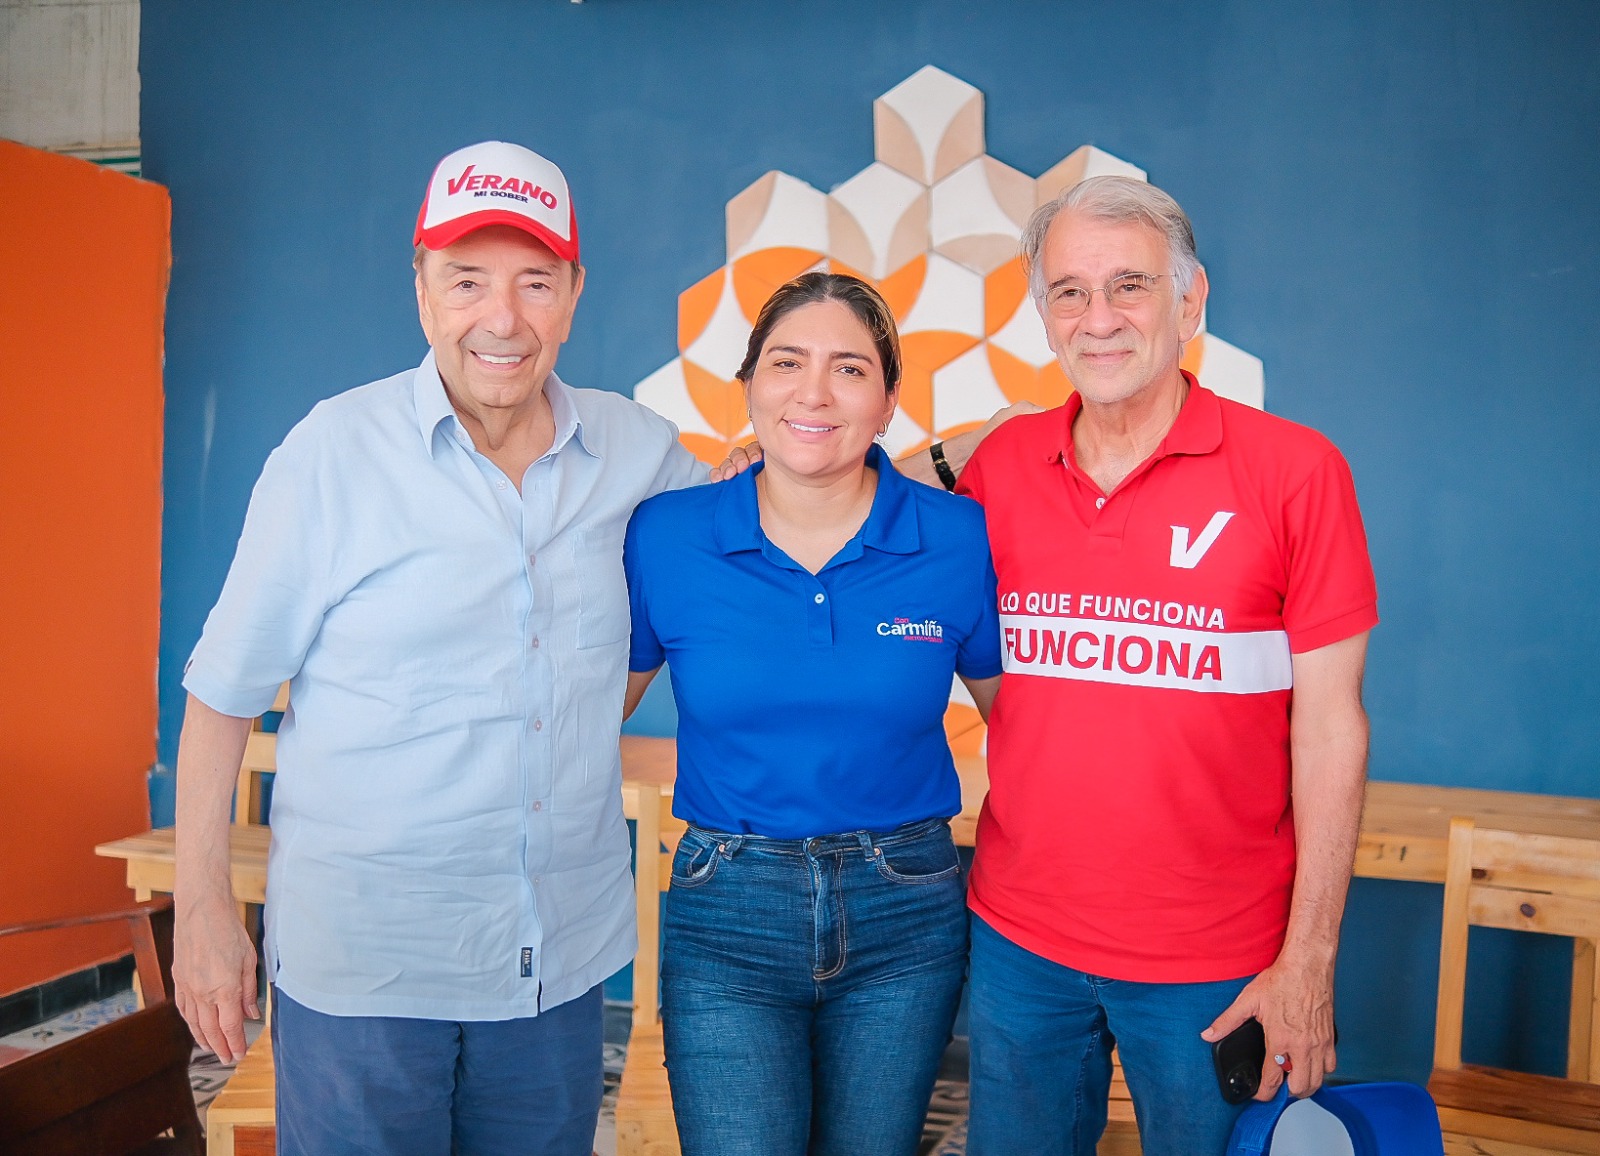 Fuad Char, Carmiña Navarro De la Hoz y Eduardo Verano.